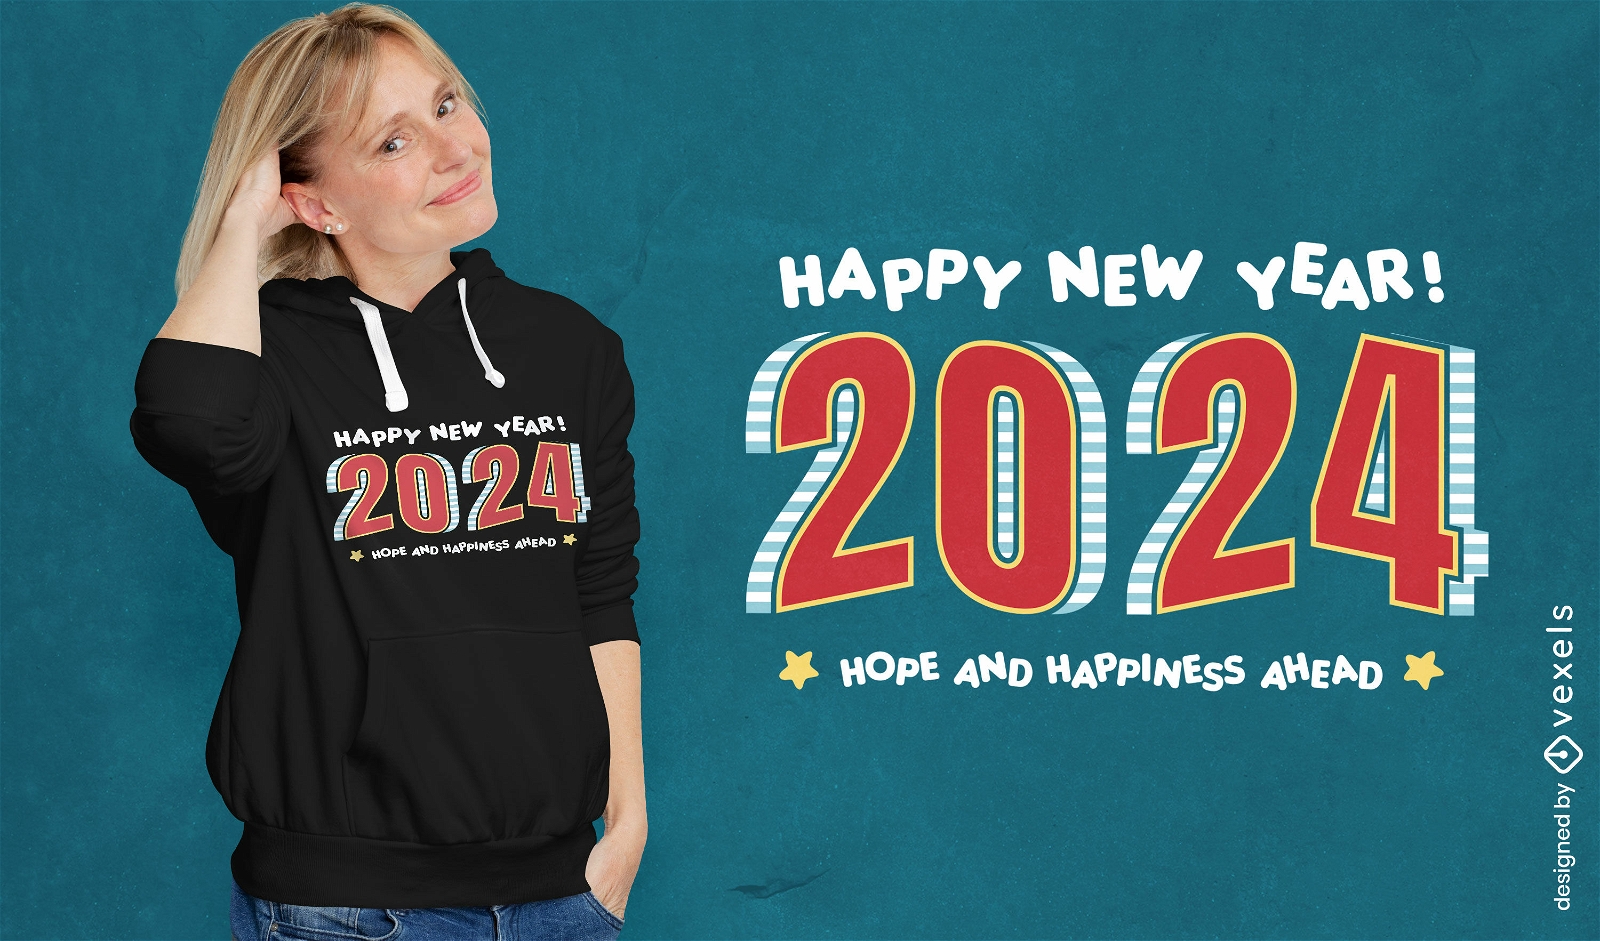 Design de camiseta com esperan?a e felicidade para o ano novo